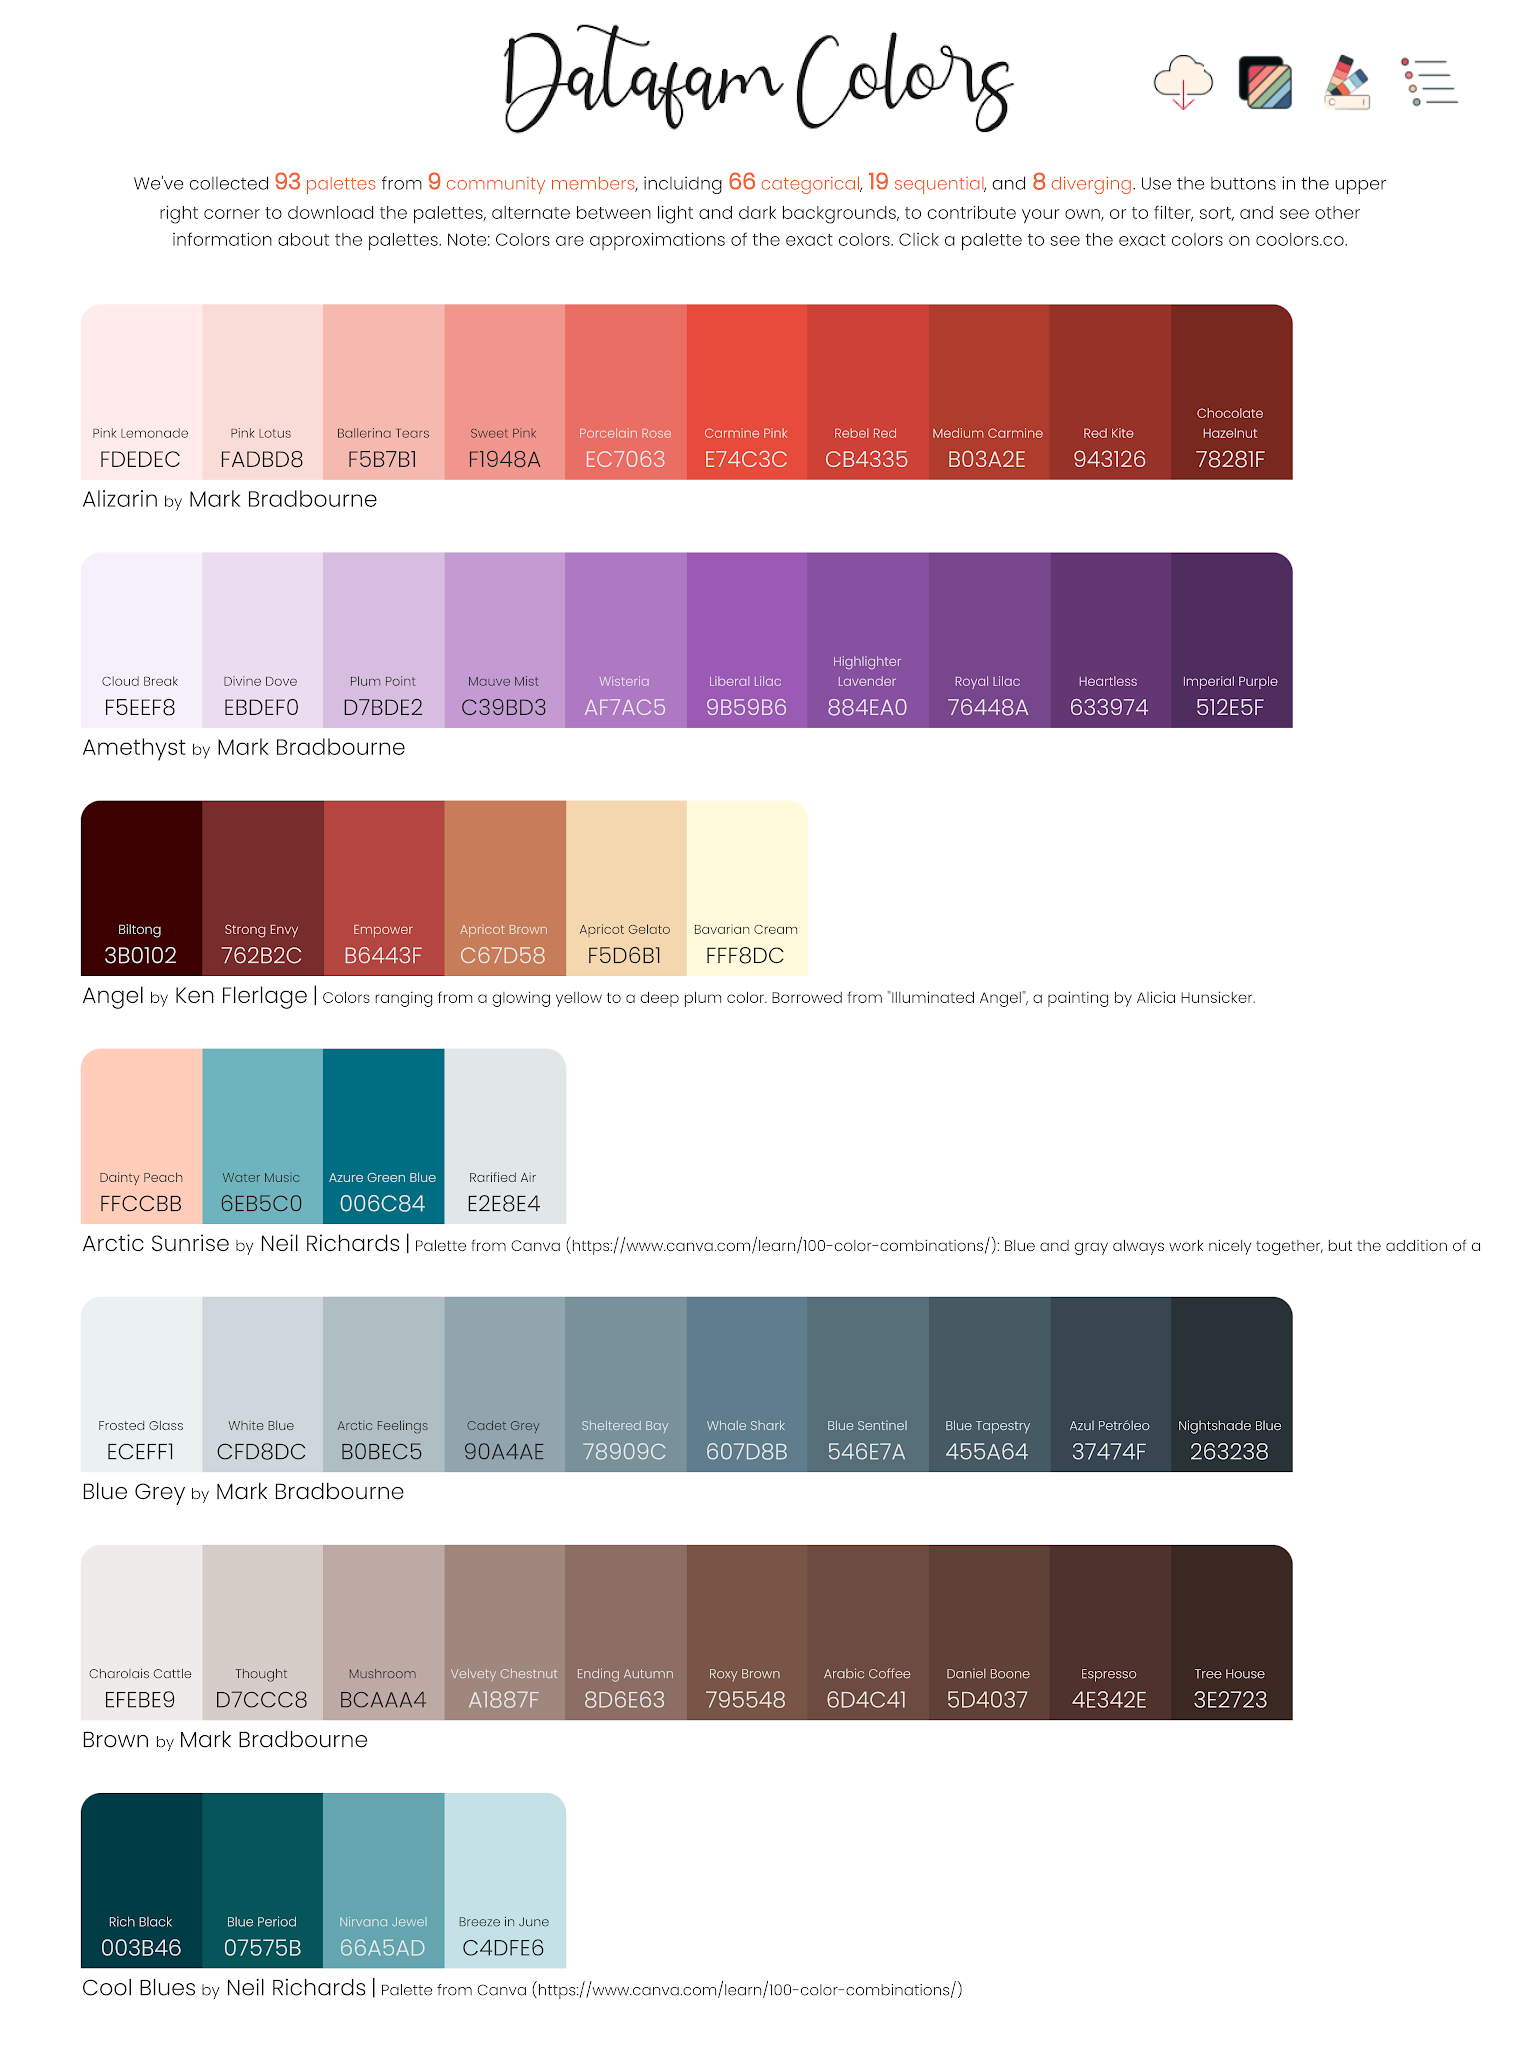 Dự án chọn bảng màu Datafam cho Tableau là sự kết hợp hoàn hảo giữa sự chuyên nghiệp và sự sáng tạo. Hãy cùng chúng tôi khám phá những bảng màu đẹp mắt và phù hợp với nhu cầu của bạn. Cùng chọn cho mình một bộ bảng màu tuyệt vời để tạo nên một sản phẩm hoàn hảo.